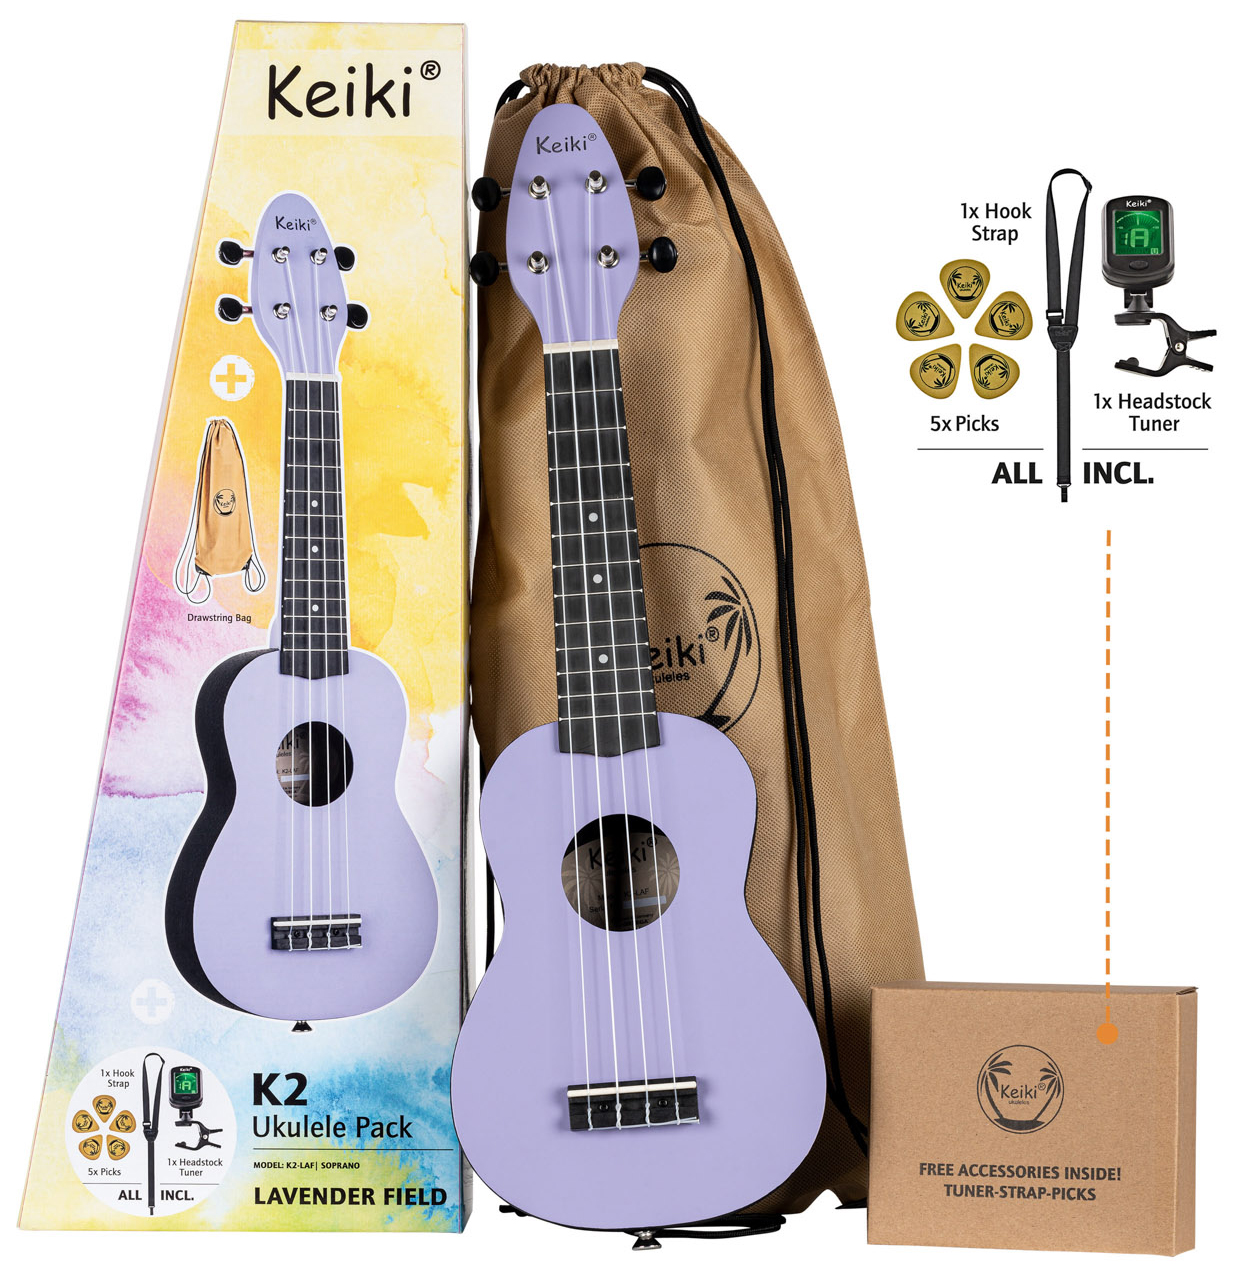 Se Ortega Keiki K2-LAF Sopran Ukulele Pack - Lavender Field hos Music2you